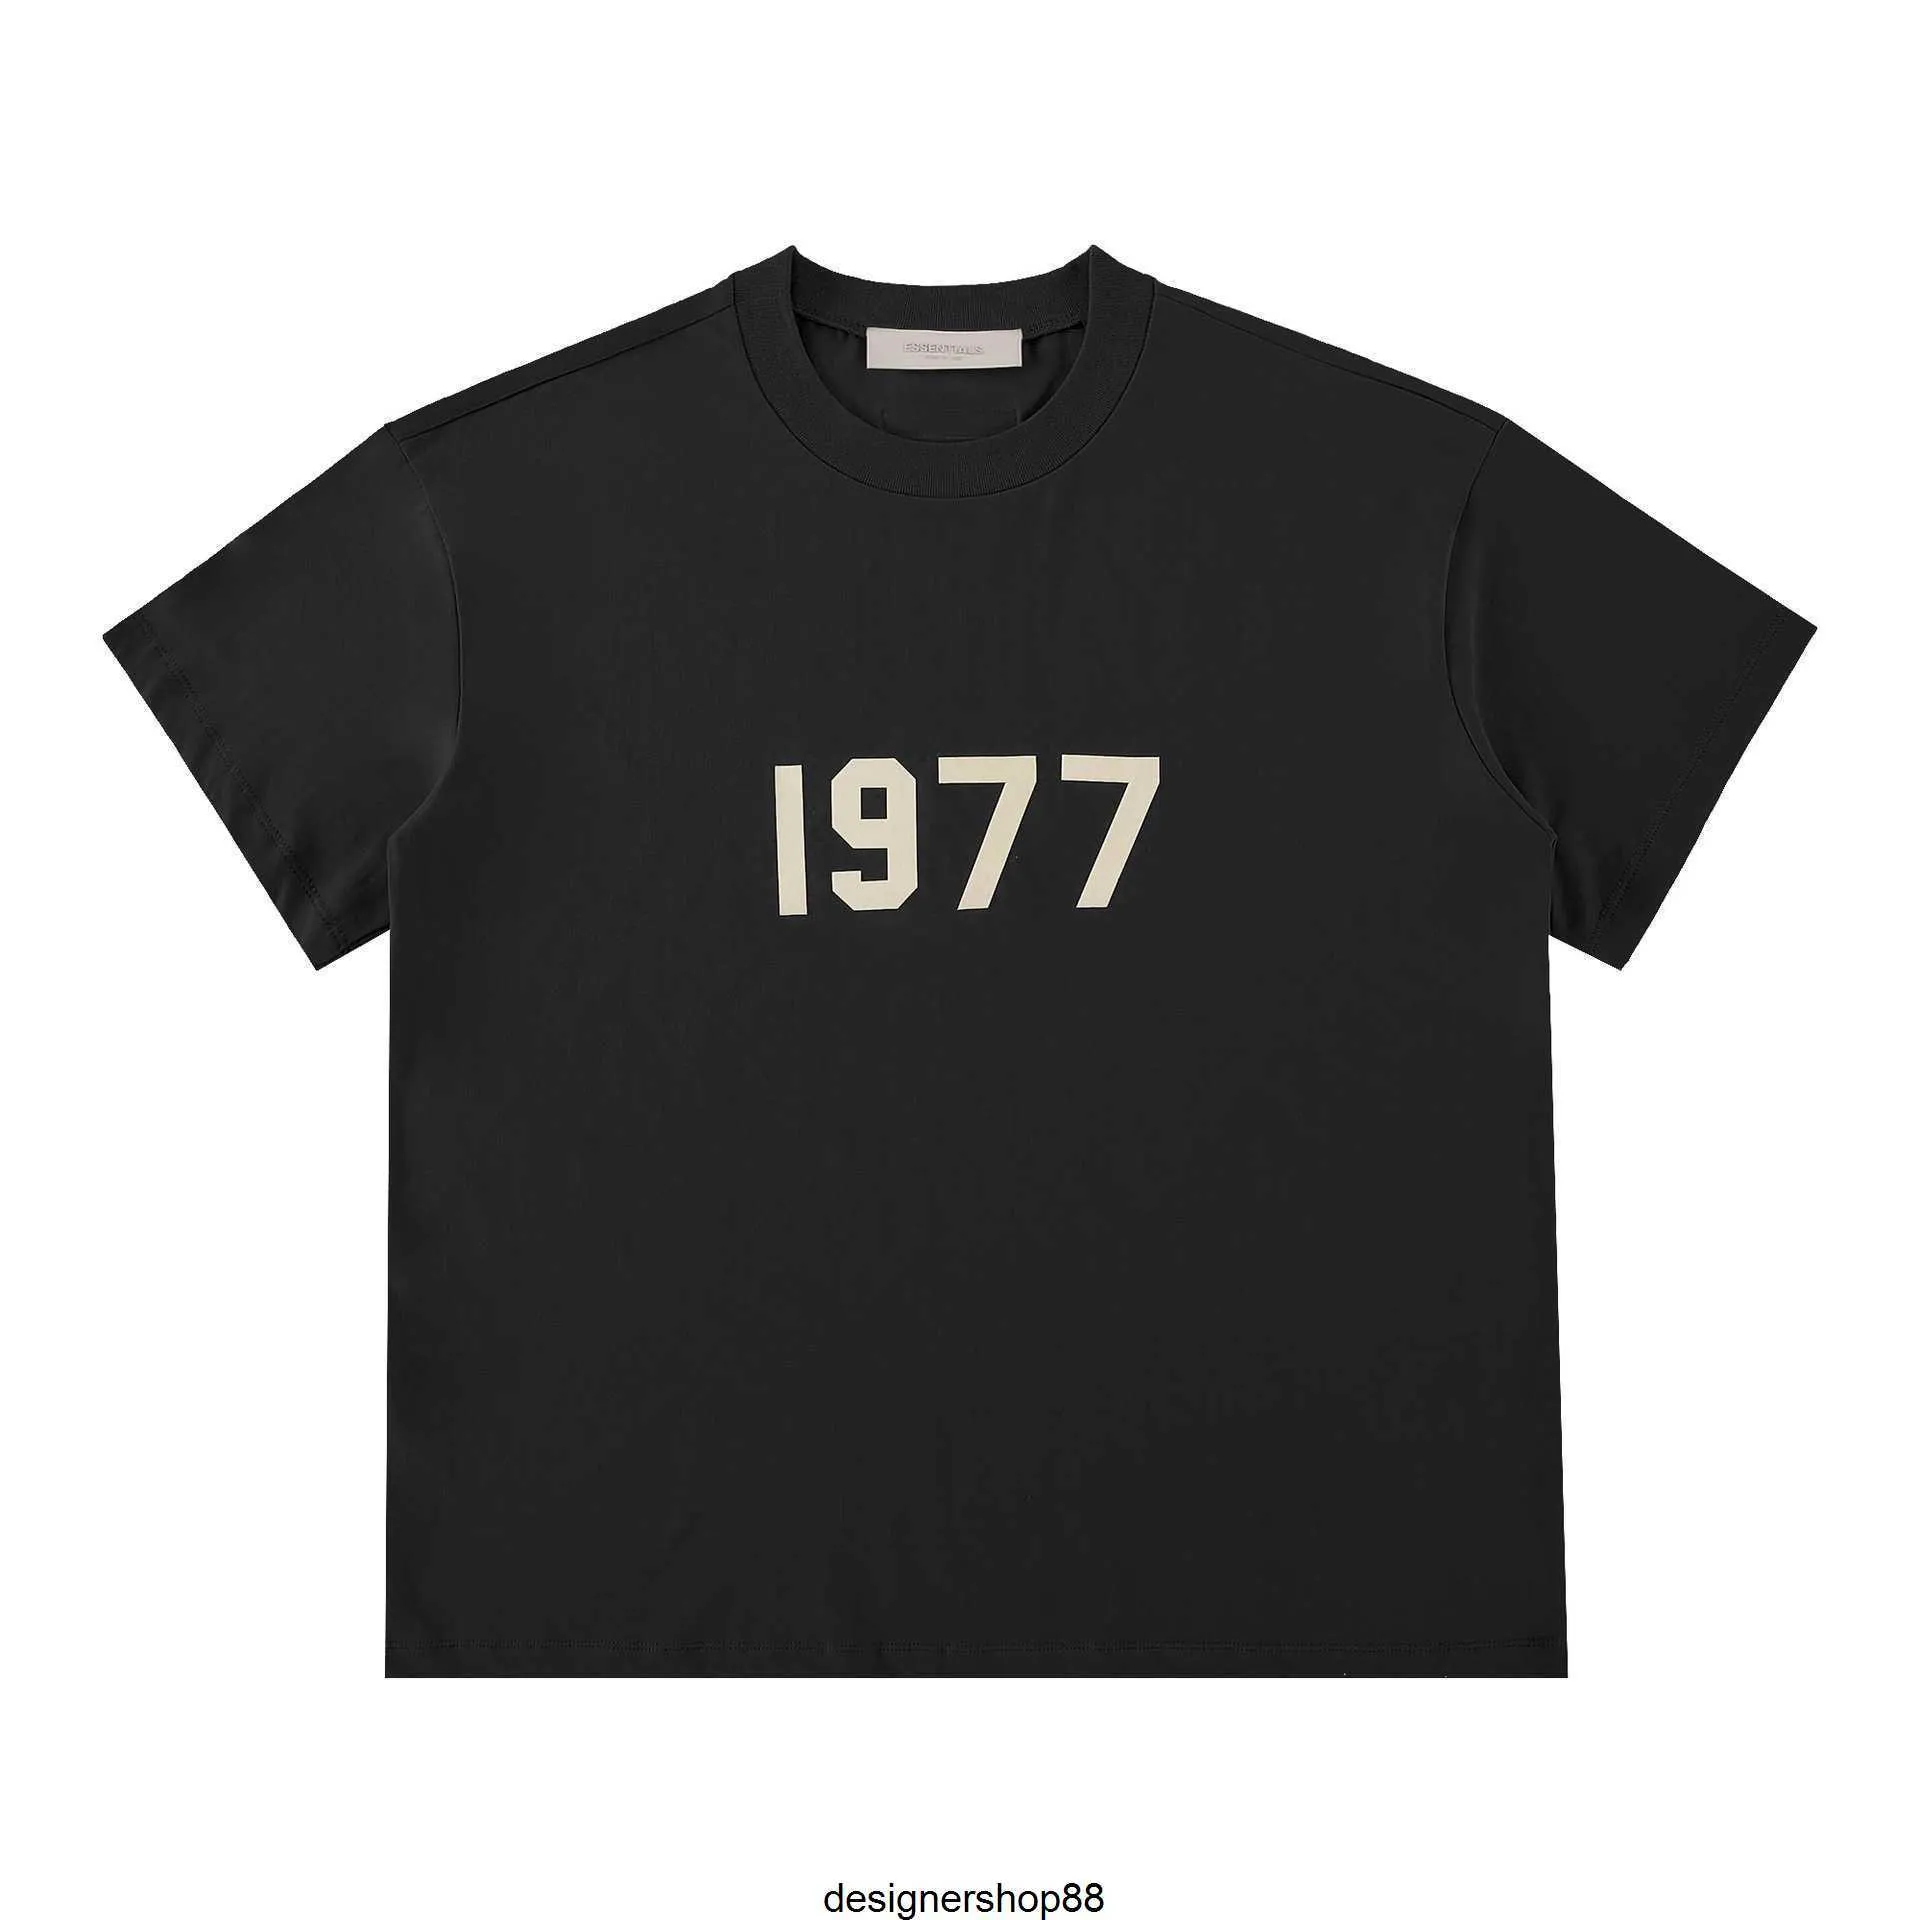 Melhor qualidade estilo de rua linha dupla ess marca americana alta moda 1977 casal versátil solto manga curta camiseta para homem